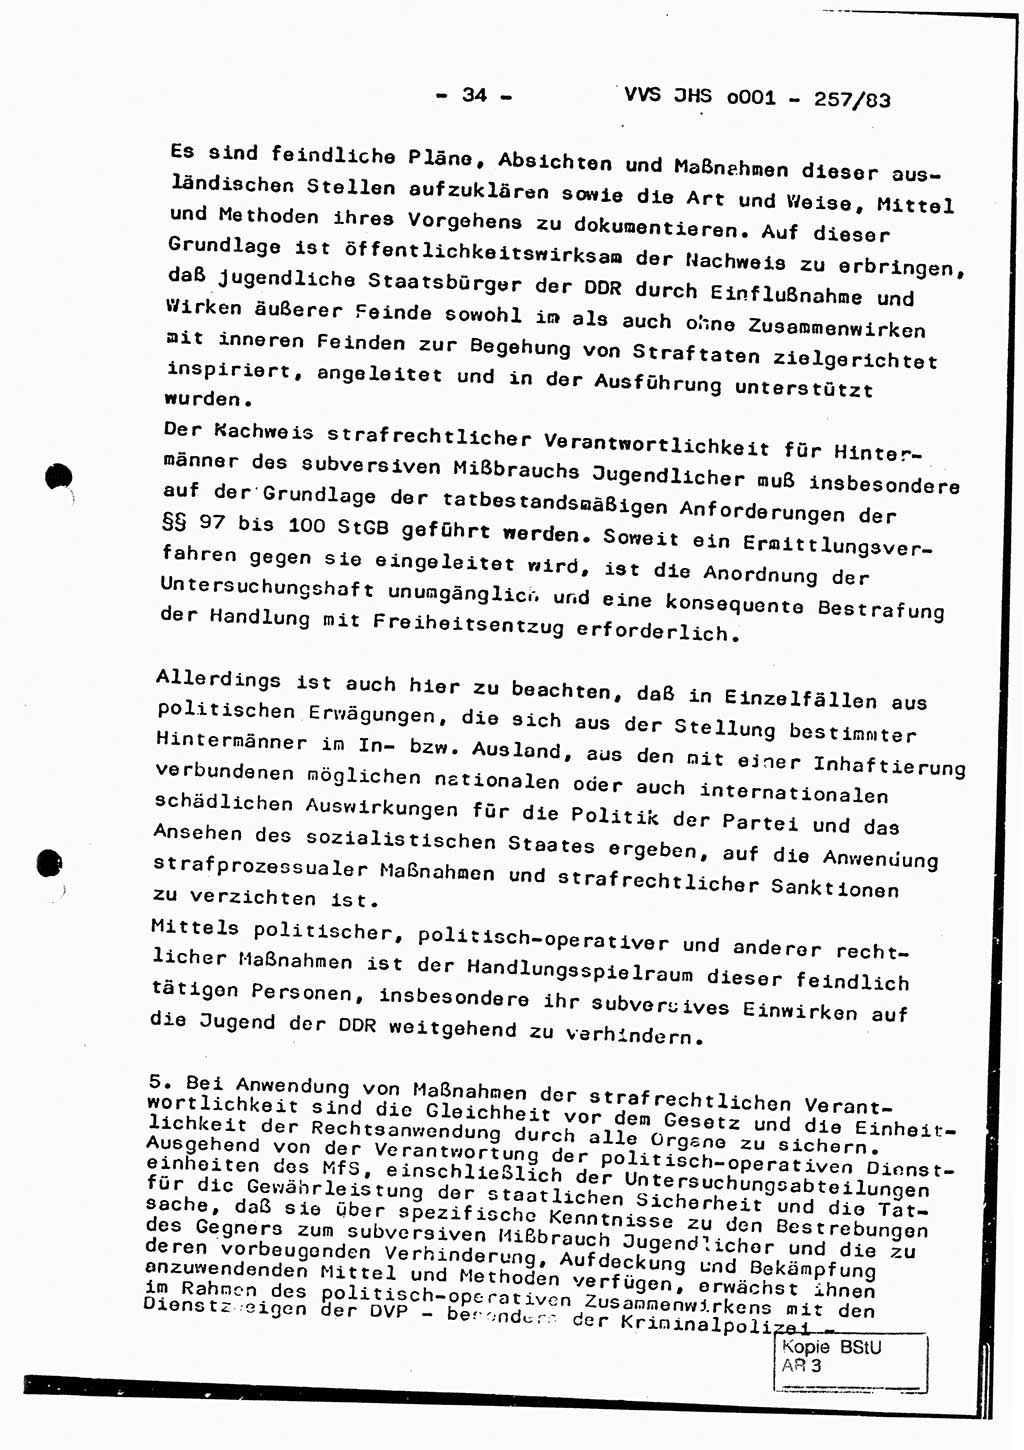 Dissertation, Oberst Helmut Lubas (BV Mdg.), Oberstleutnant Manfred Eschberger (HA IX), Oberleutnant Hans-Jürgen Ludwig (JHS), Ministerium für Staatssicherheit (MfS) [Deutsche Demokratische Republik (DDR)], Juristische Hochschule (JHS), Vertrauliche Verschlußsache (VVS) o001-257/83, Potsdam 1983, Seite 34 (Diss. MfS DDR JHS VVS o001-257/83 1983, S. 34)